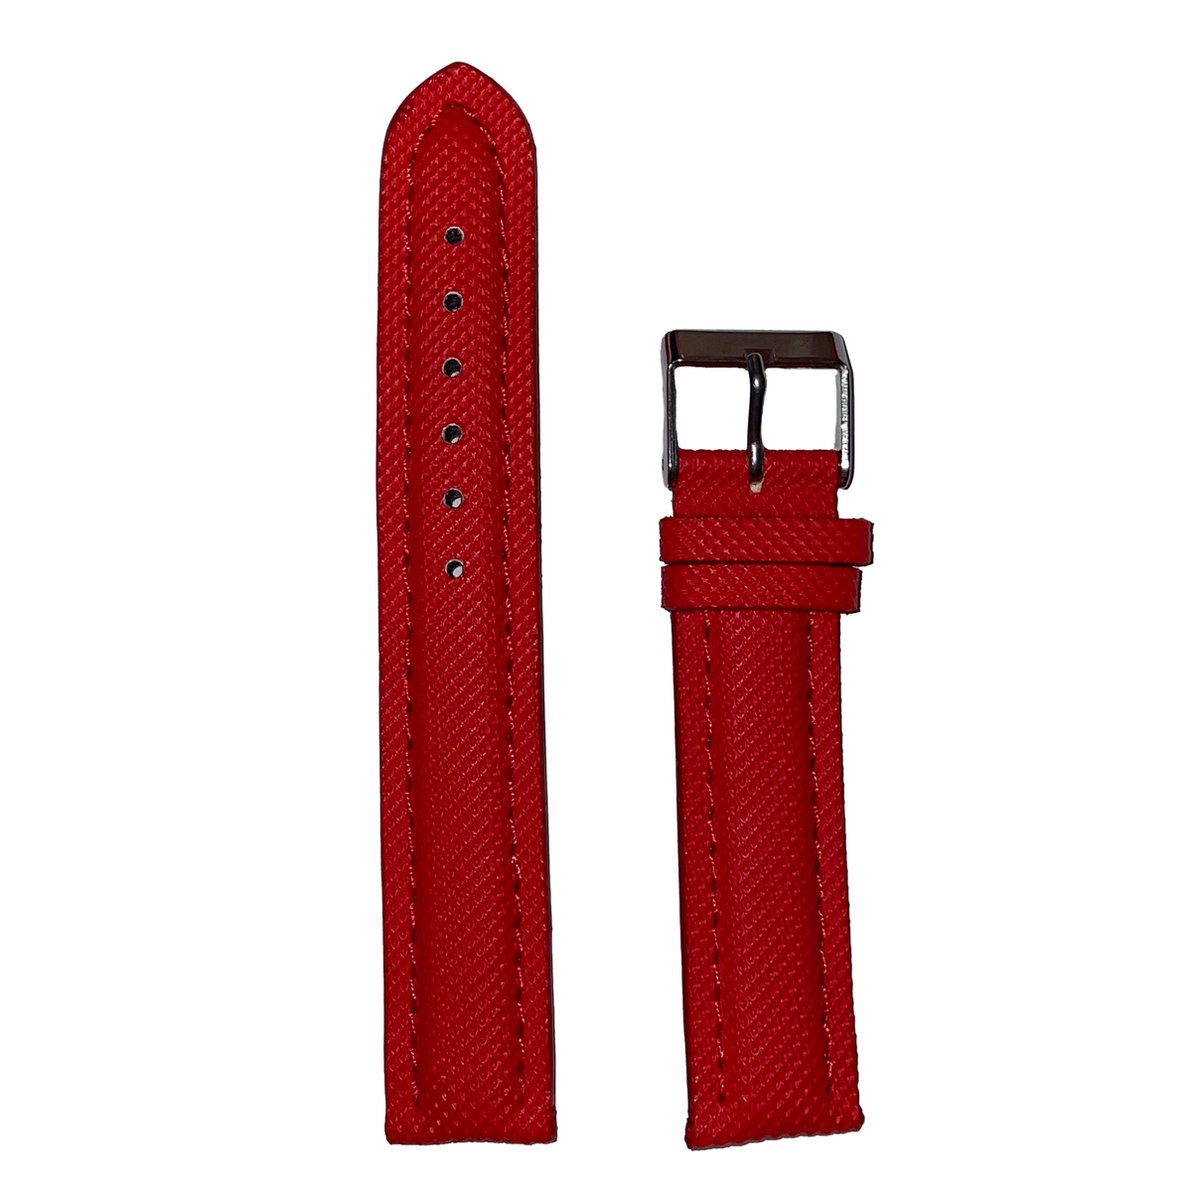 Horlogeband - 18mm - Rood - Echt leer in stoffen uitvoering - Roestvrijstalen gesp